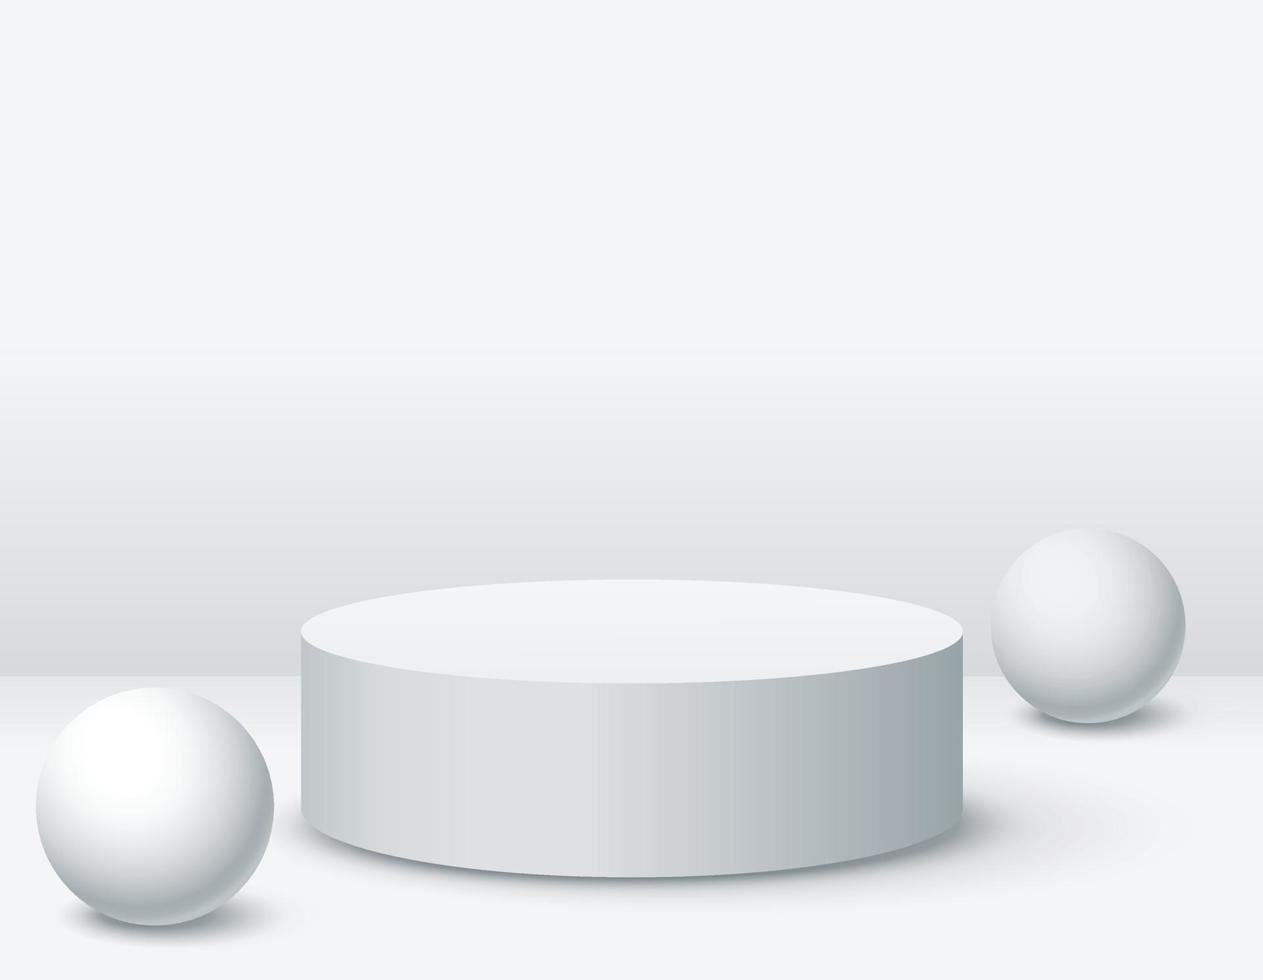 zylindrisch Podium Attrappe, Lehrmodell, Simulation zum Produkt Präsentation auf Weiß Farbe Hintergrund vektor